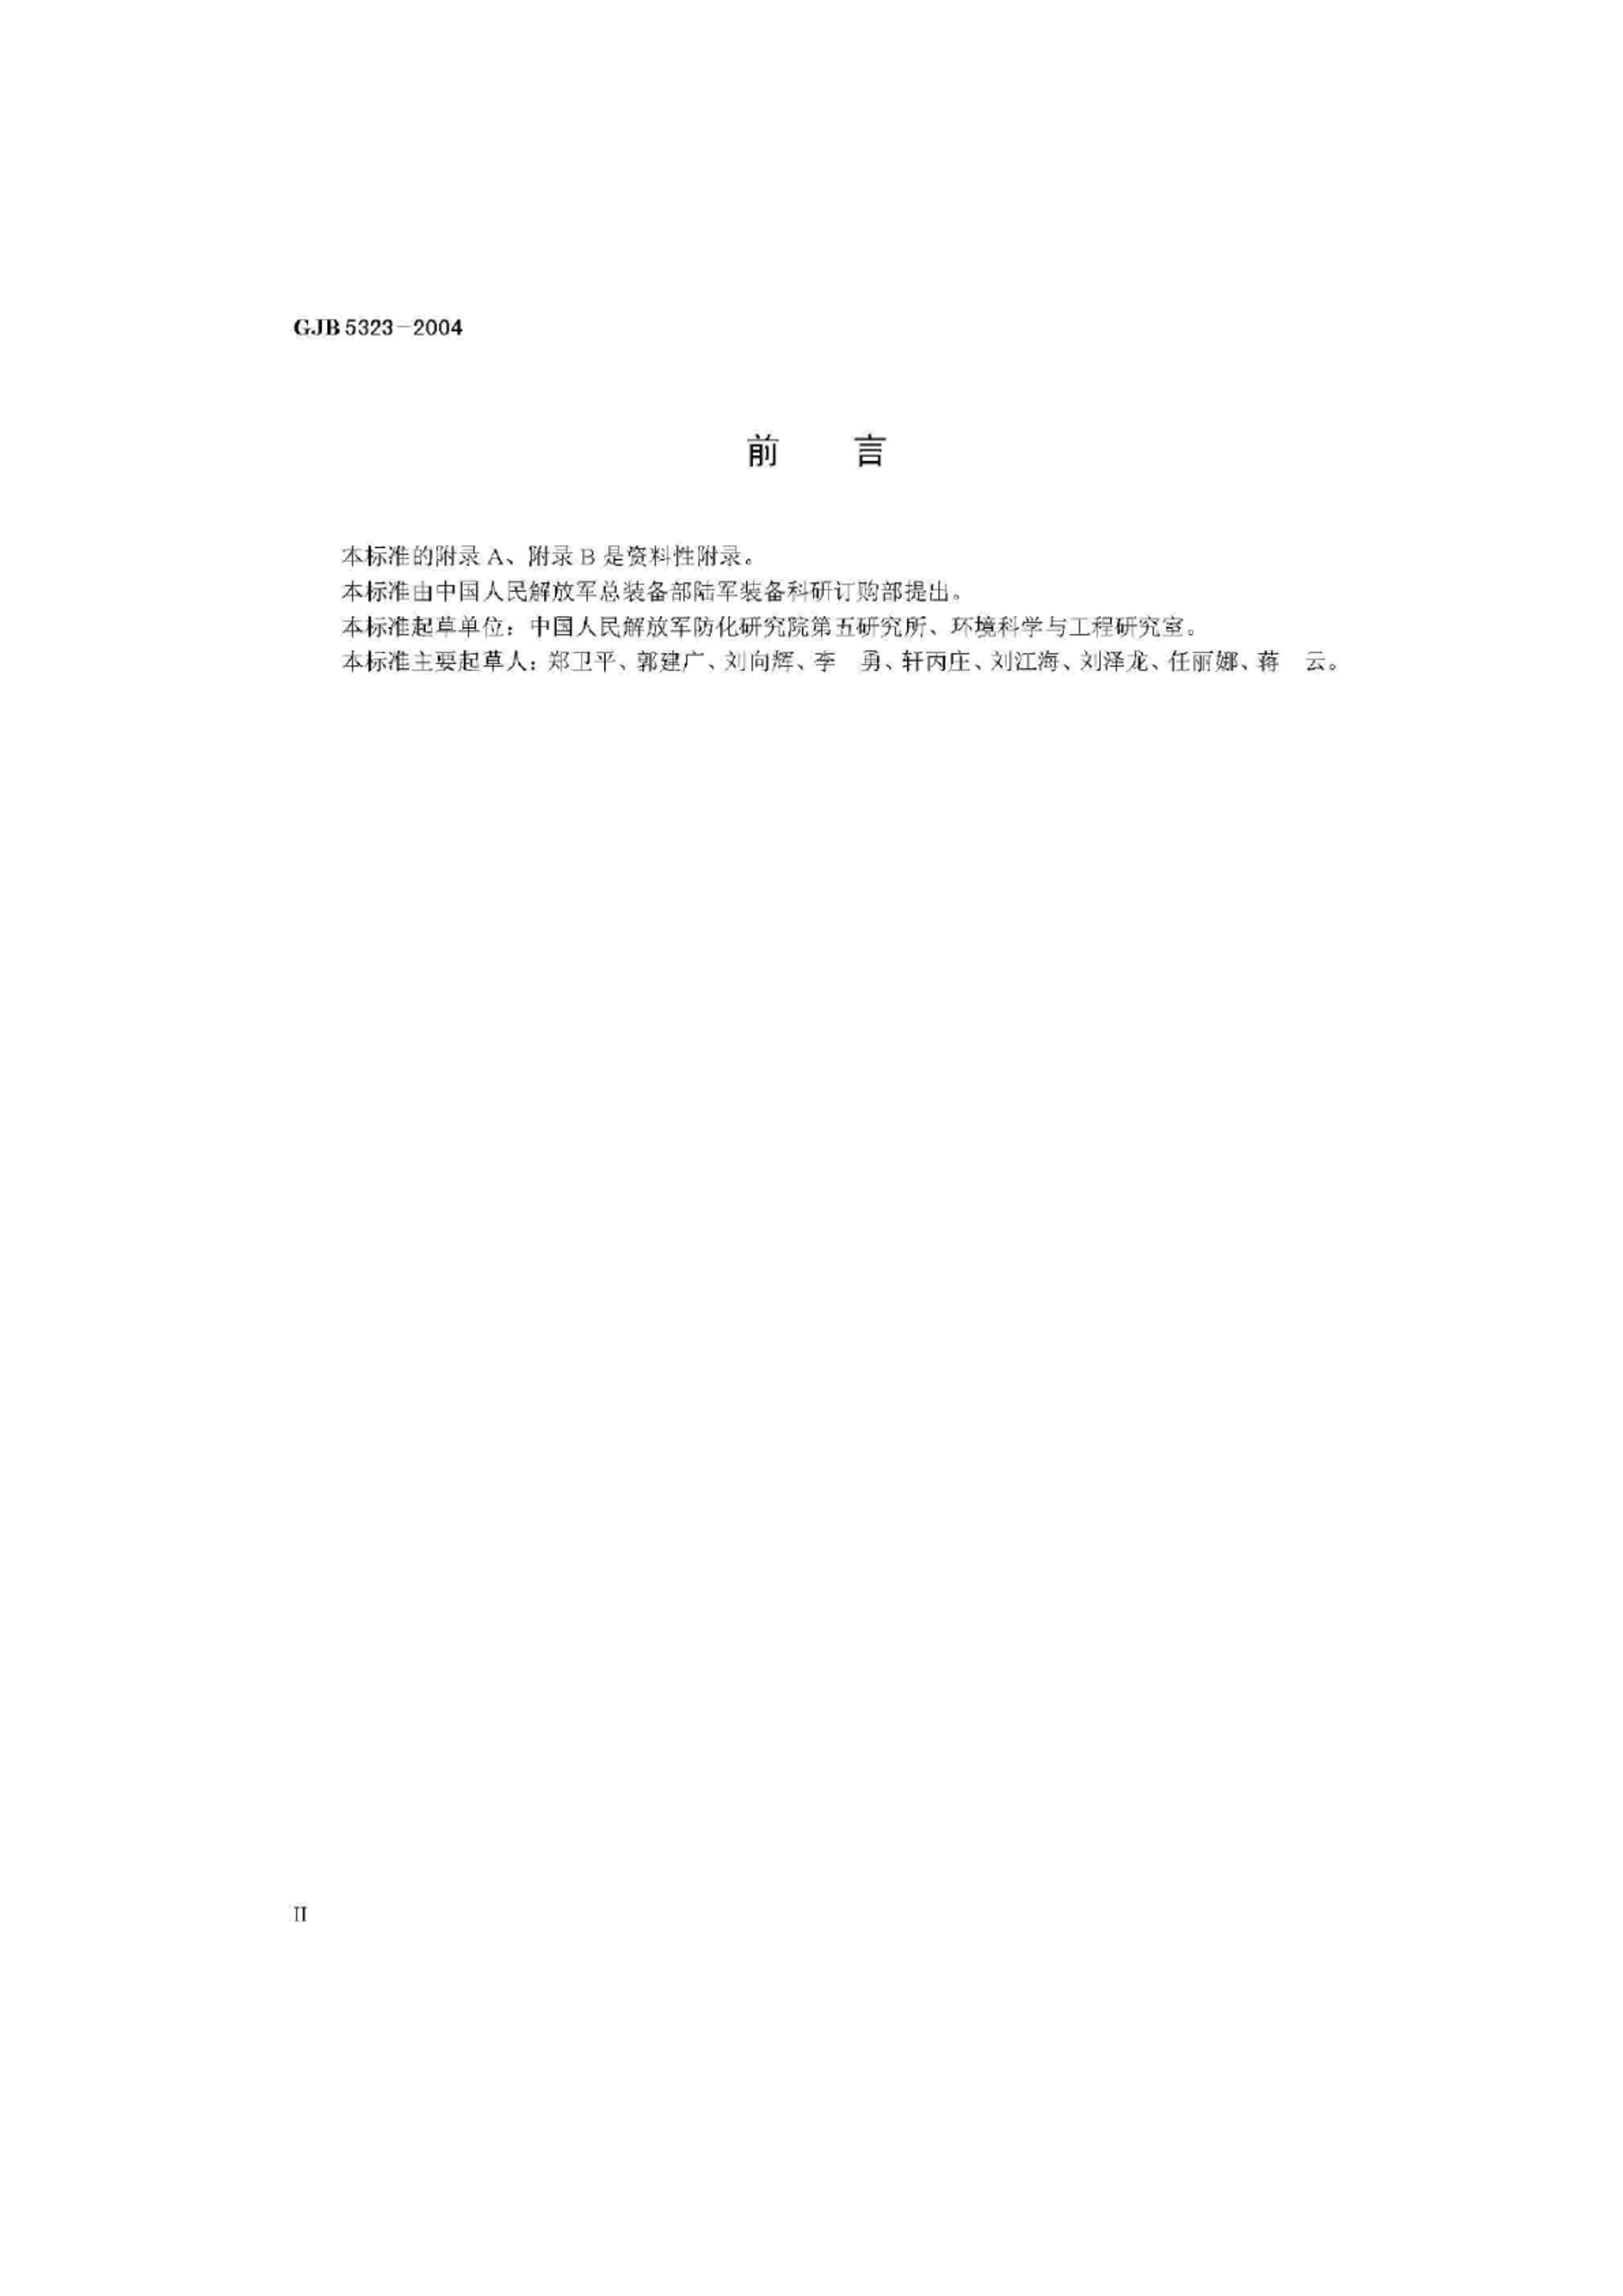 GJB 5323-2004 Ļǵڱ 鷽.pdf3ҳ